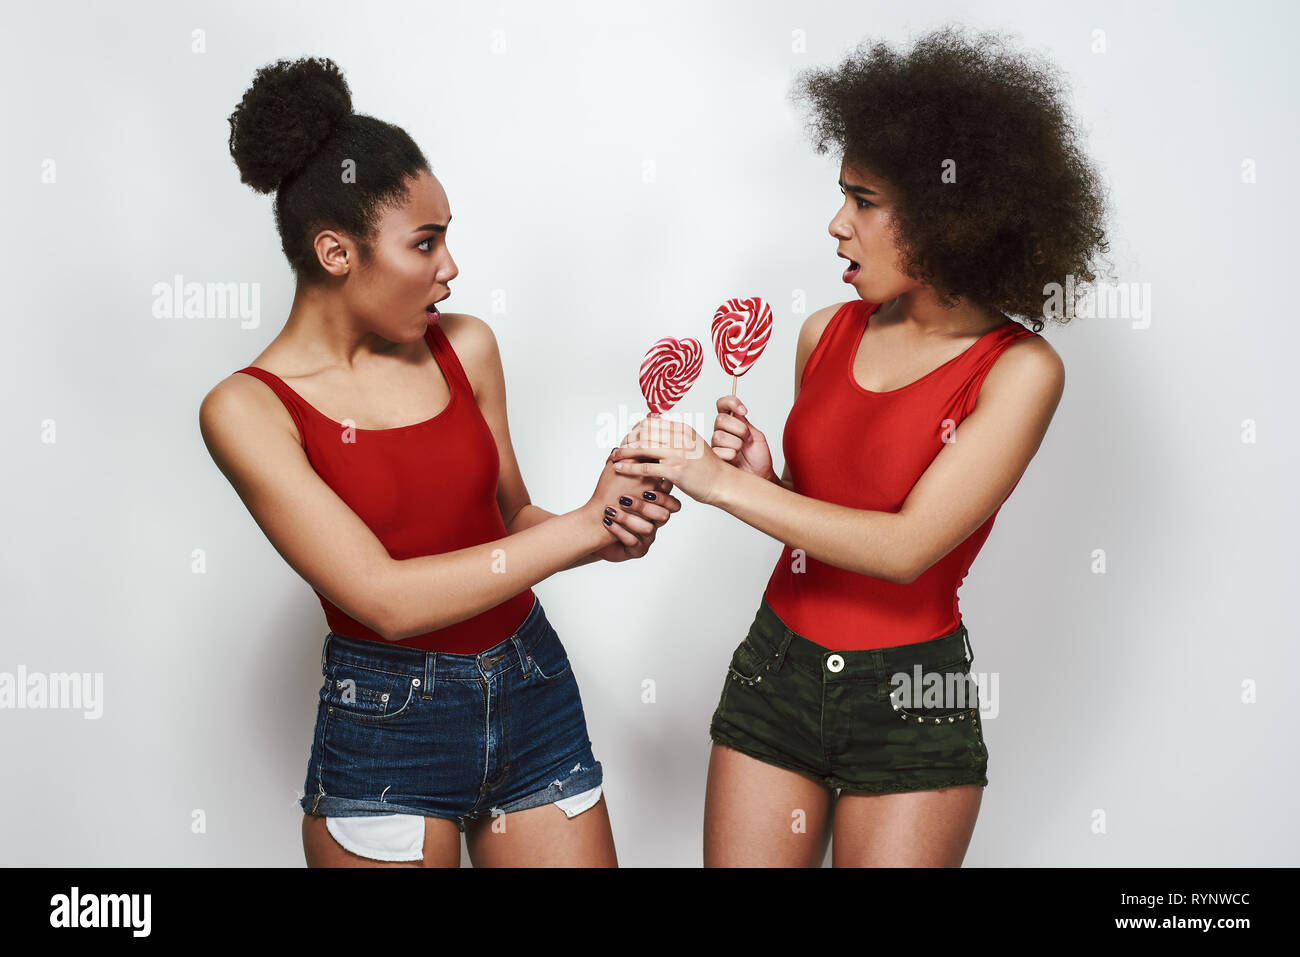 Ich will mehr! Zwei verärgerte afro-amerikanische Frau, die in Jeans Shorts sind sich einander mit geöffnetem Mund und Holding Lutscher geformte Herz, während gegen grauen Hintergrund stehend Stockfoto